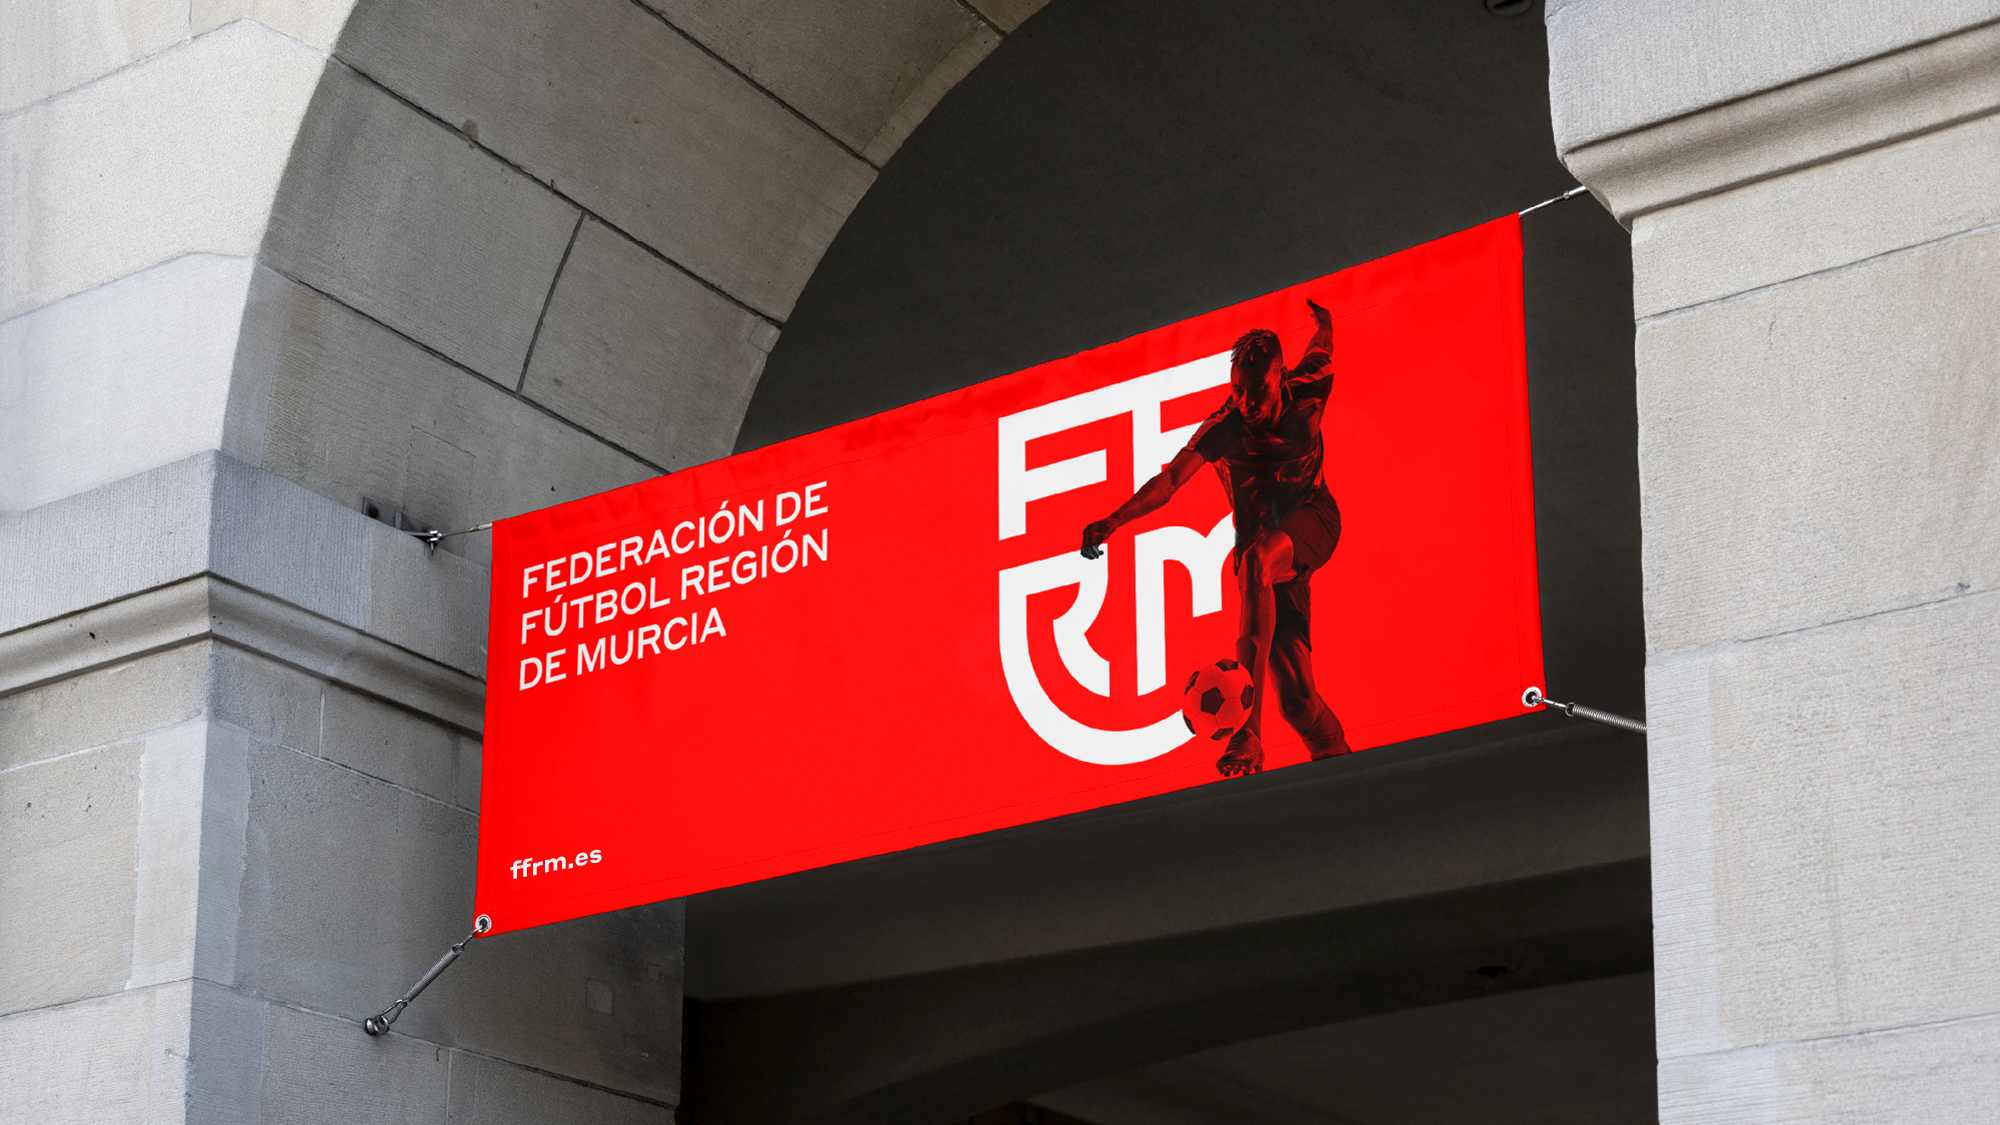 Federación de Fútbol de la Región de Murcia